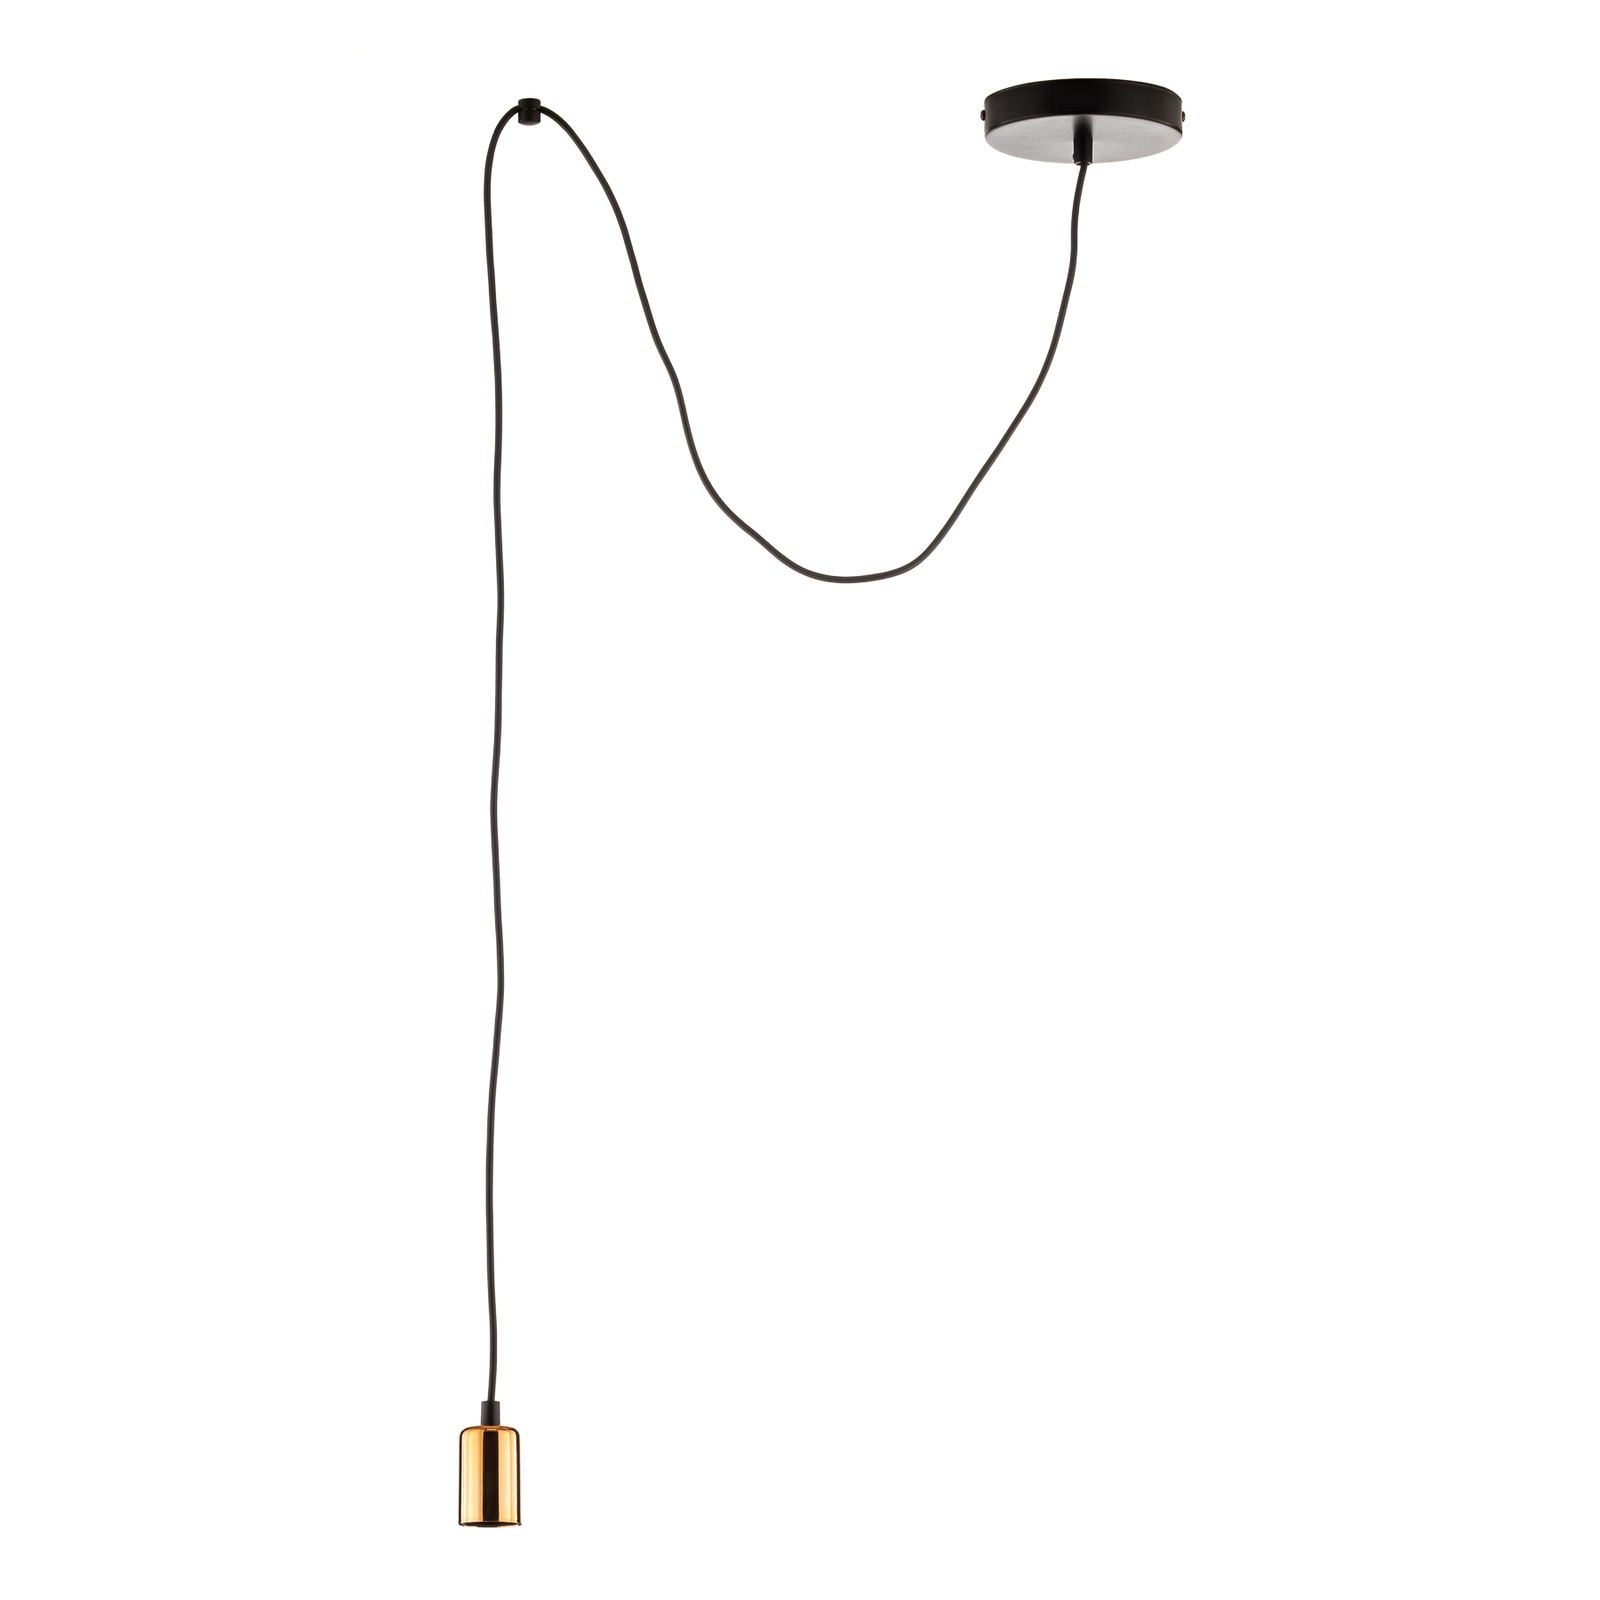 Hanglamp Spark 1 1-lamp, zwart-koper